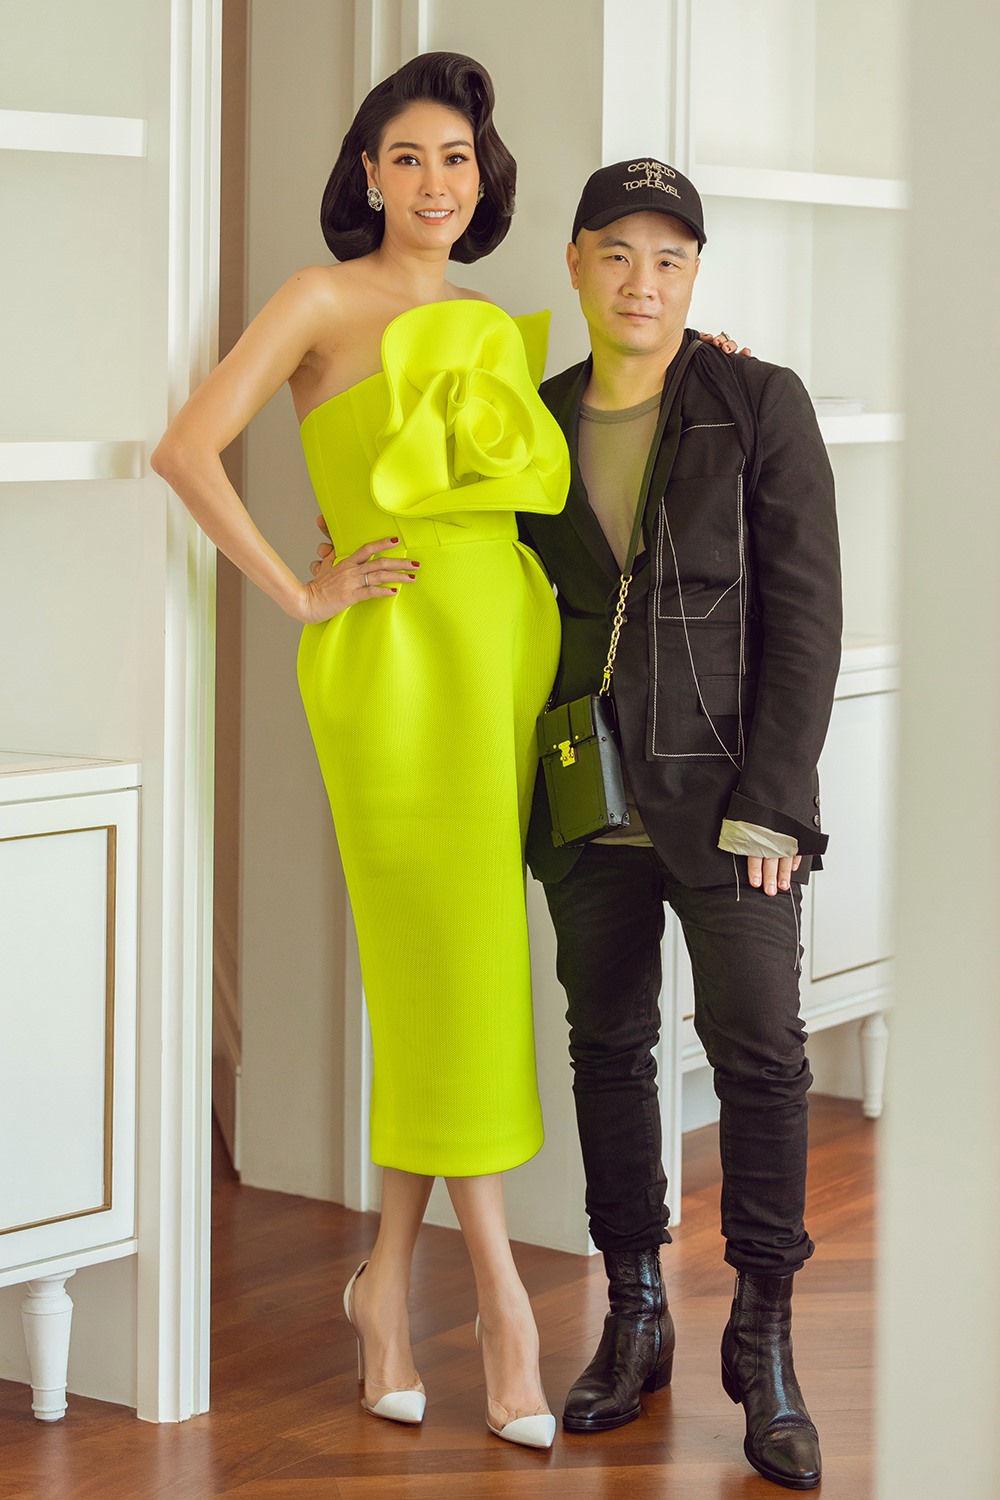 Nhà thiết kế Đỗ Mạnh Cường cũng đến chung vui tiệc sinh nhật của người chị thân thiết là Hoa hậu Hà Kiều Anh.